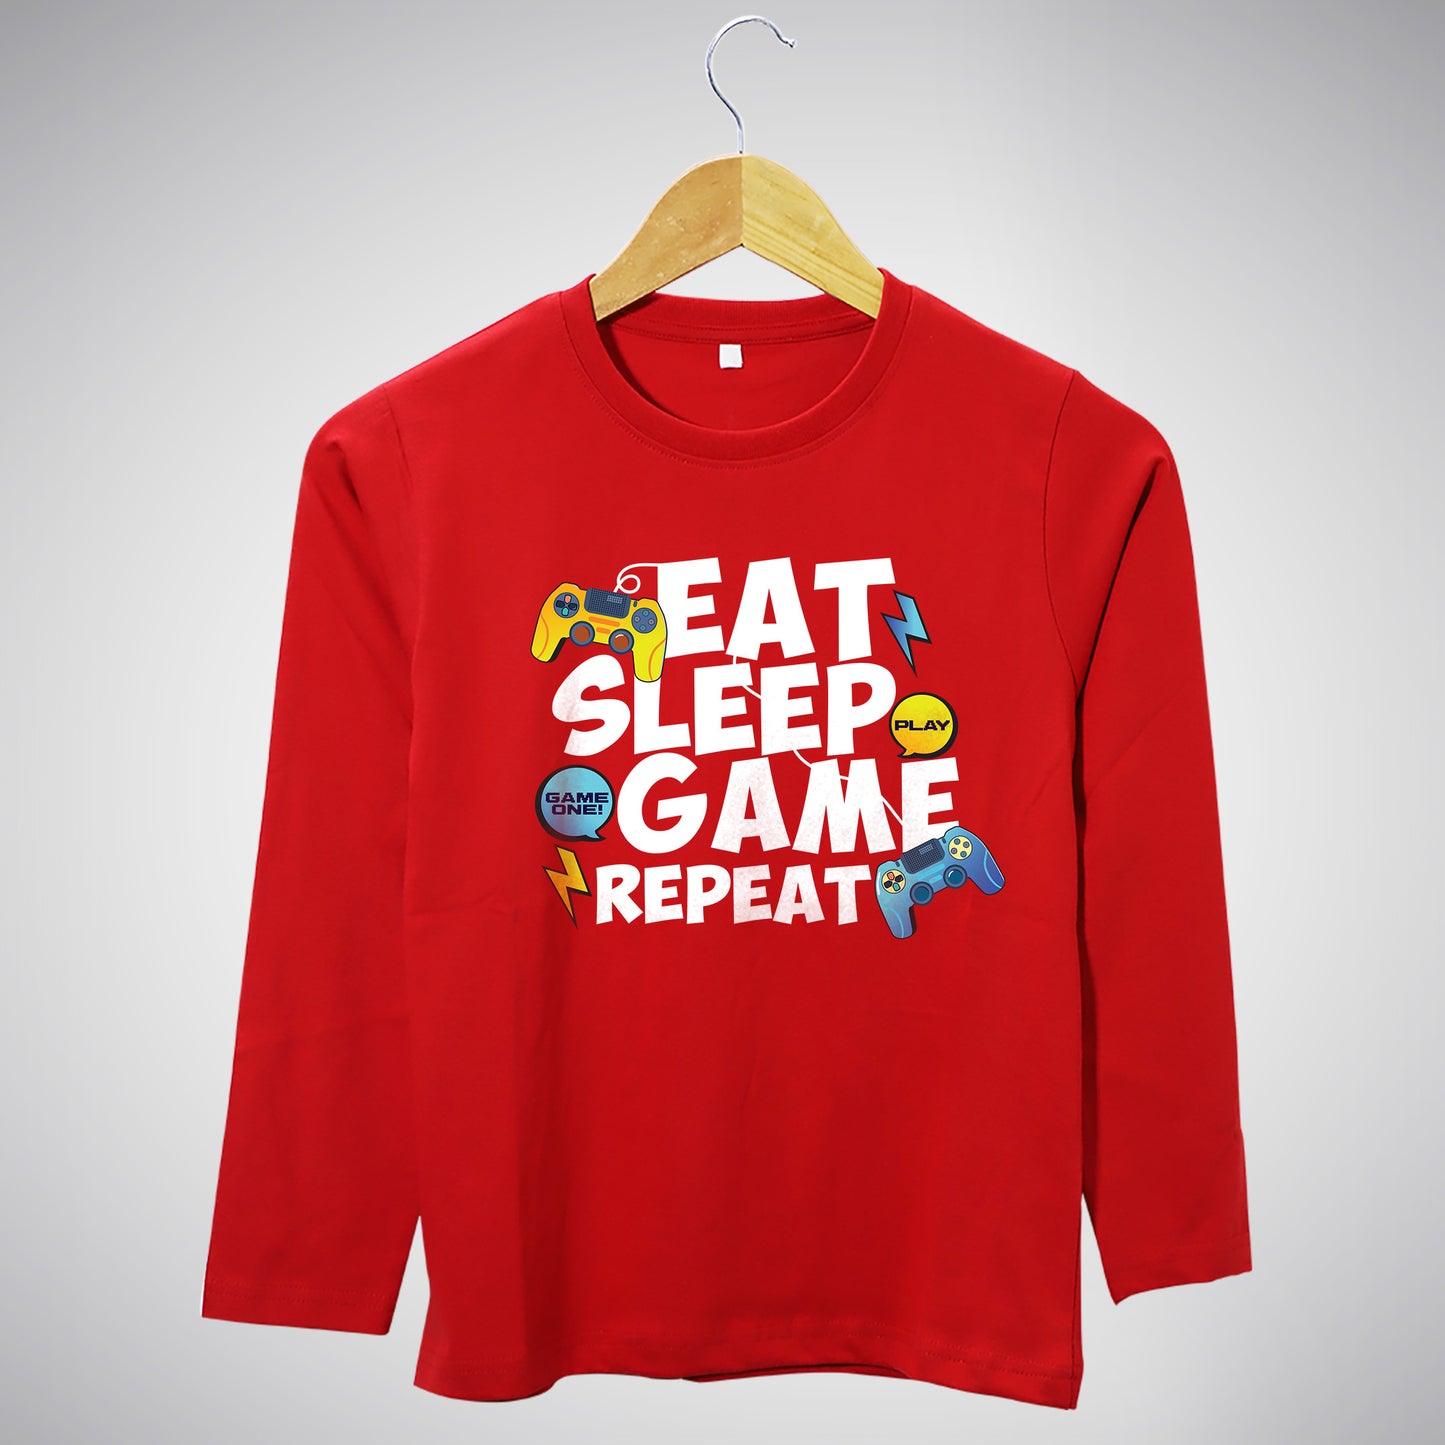 Eat. Sleep. Game. Repeat. - Full Sleeves